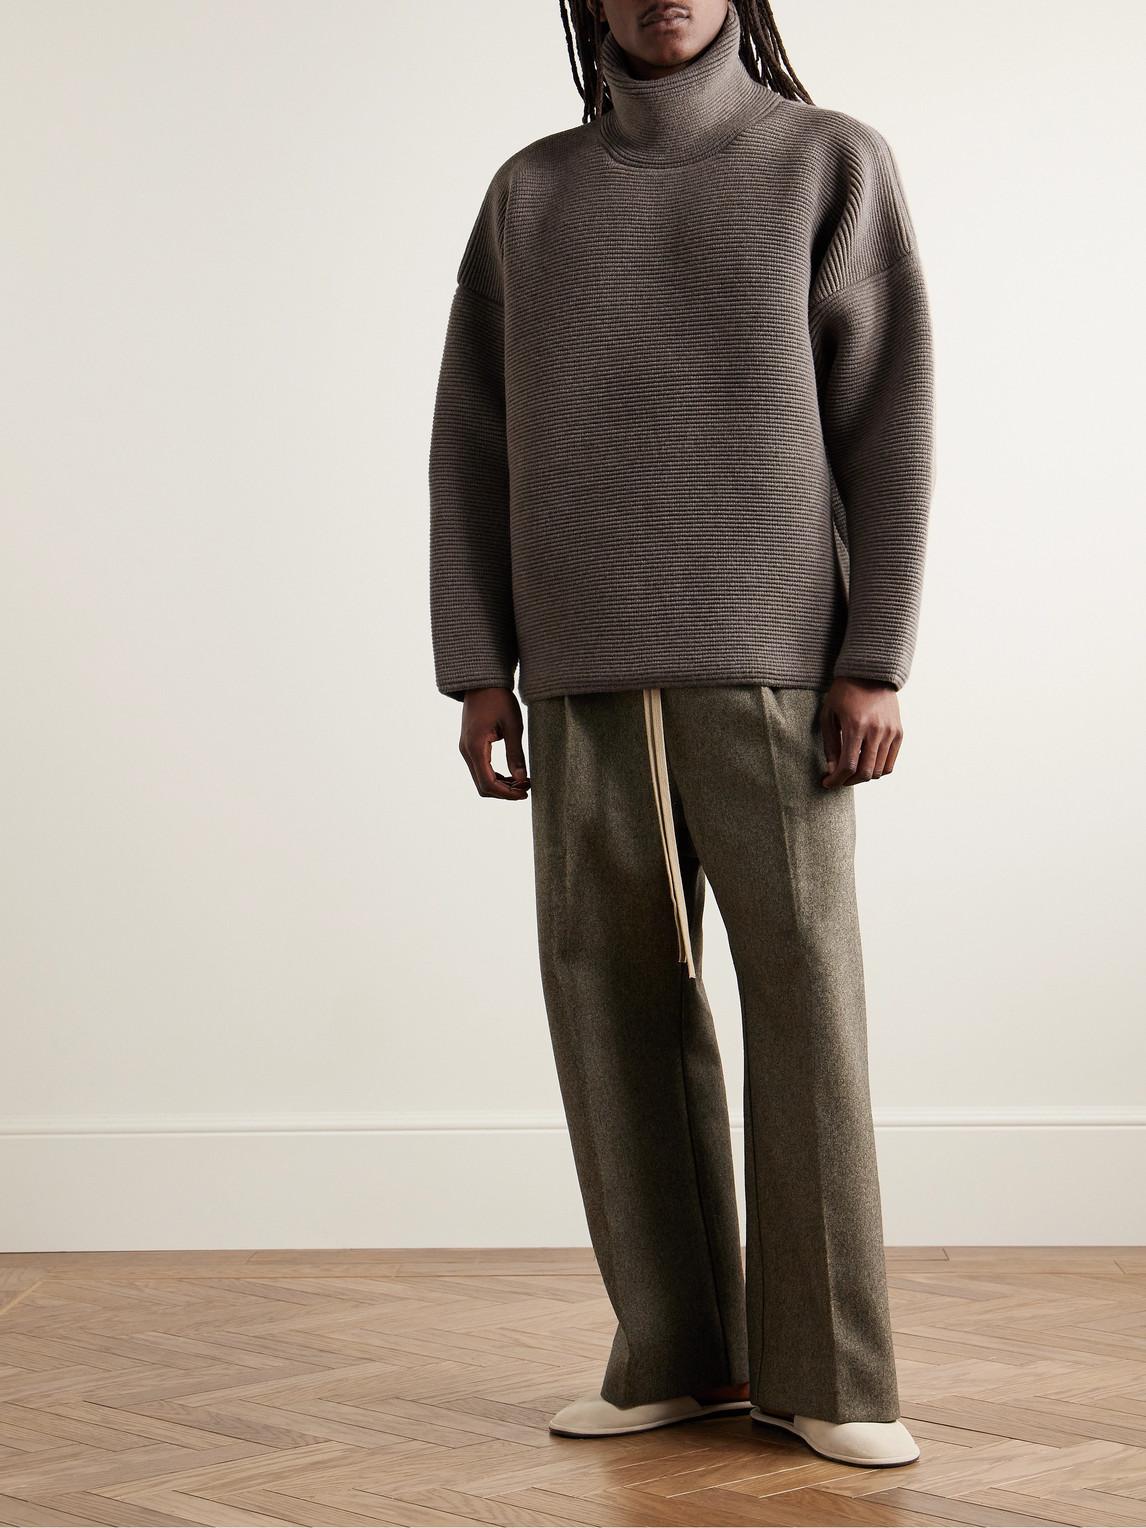 https://cdna.lystit.com/photos/mrporter/c6d02d6a/fear-of-god-Brown-Oversized-Virgin-Wool-Ottoman-Rollneck-Sweater.jpeg